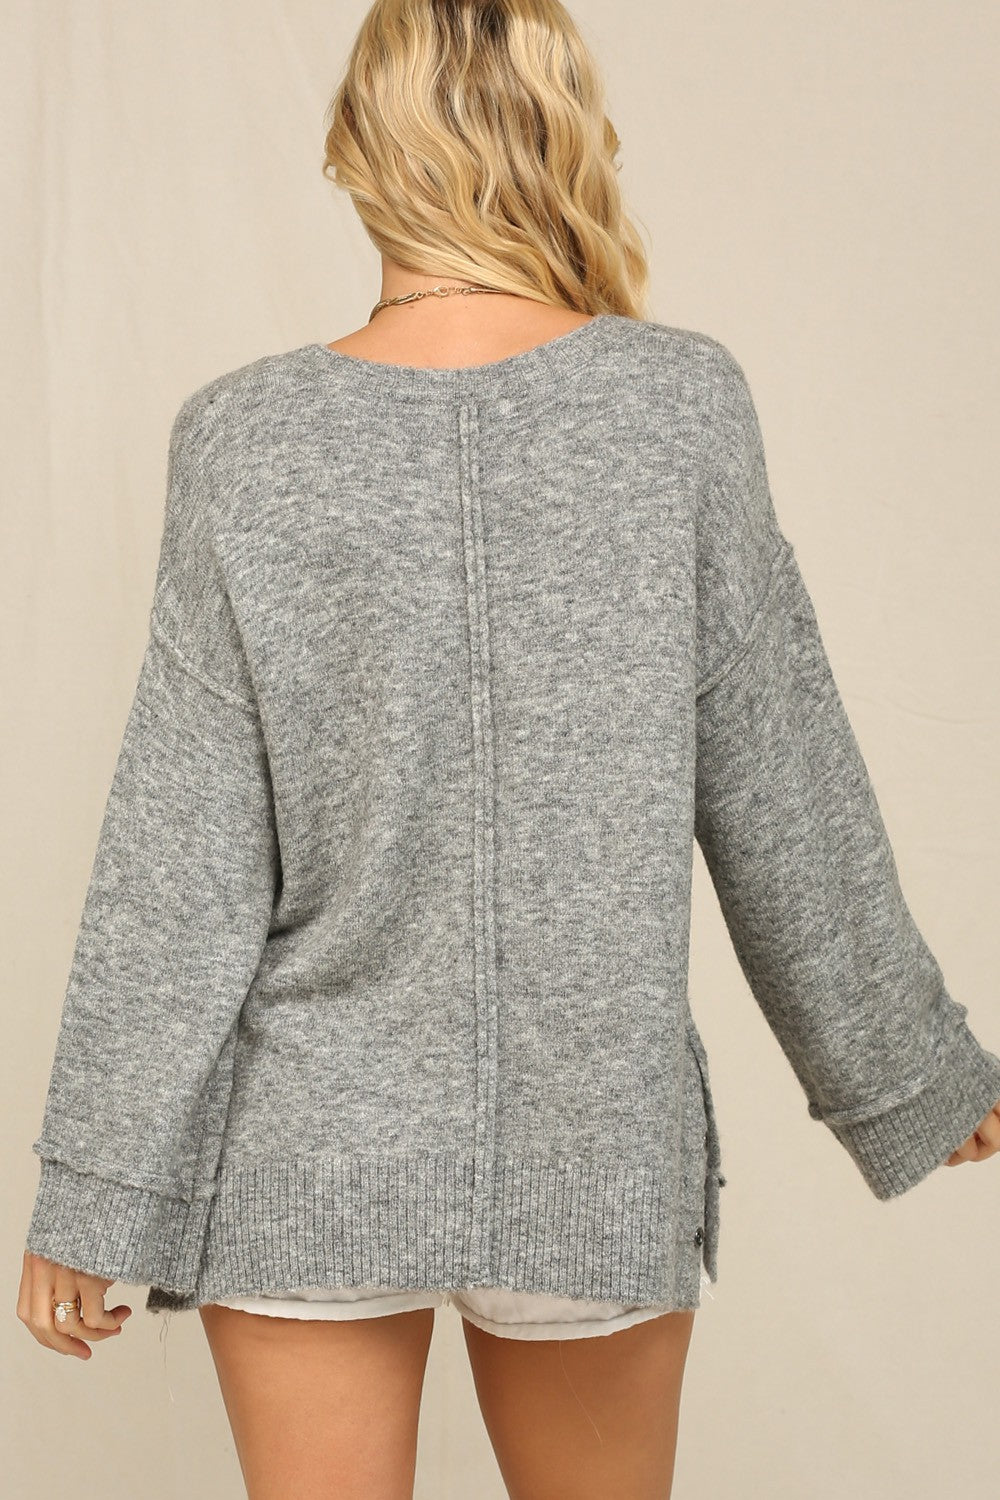 Harmony Sweater